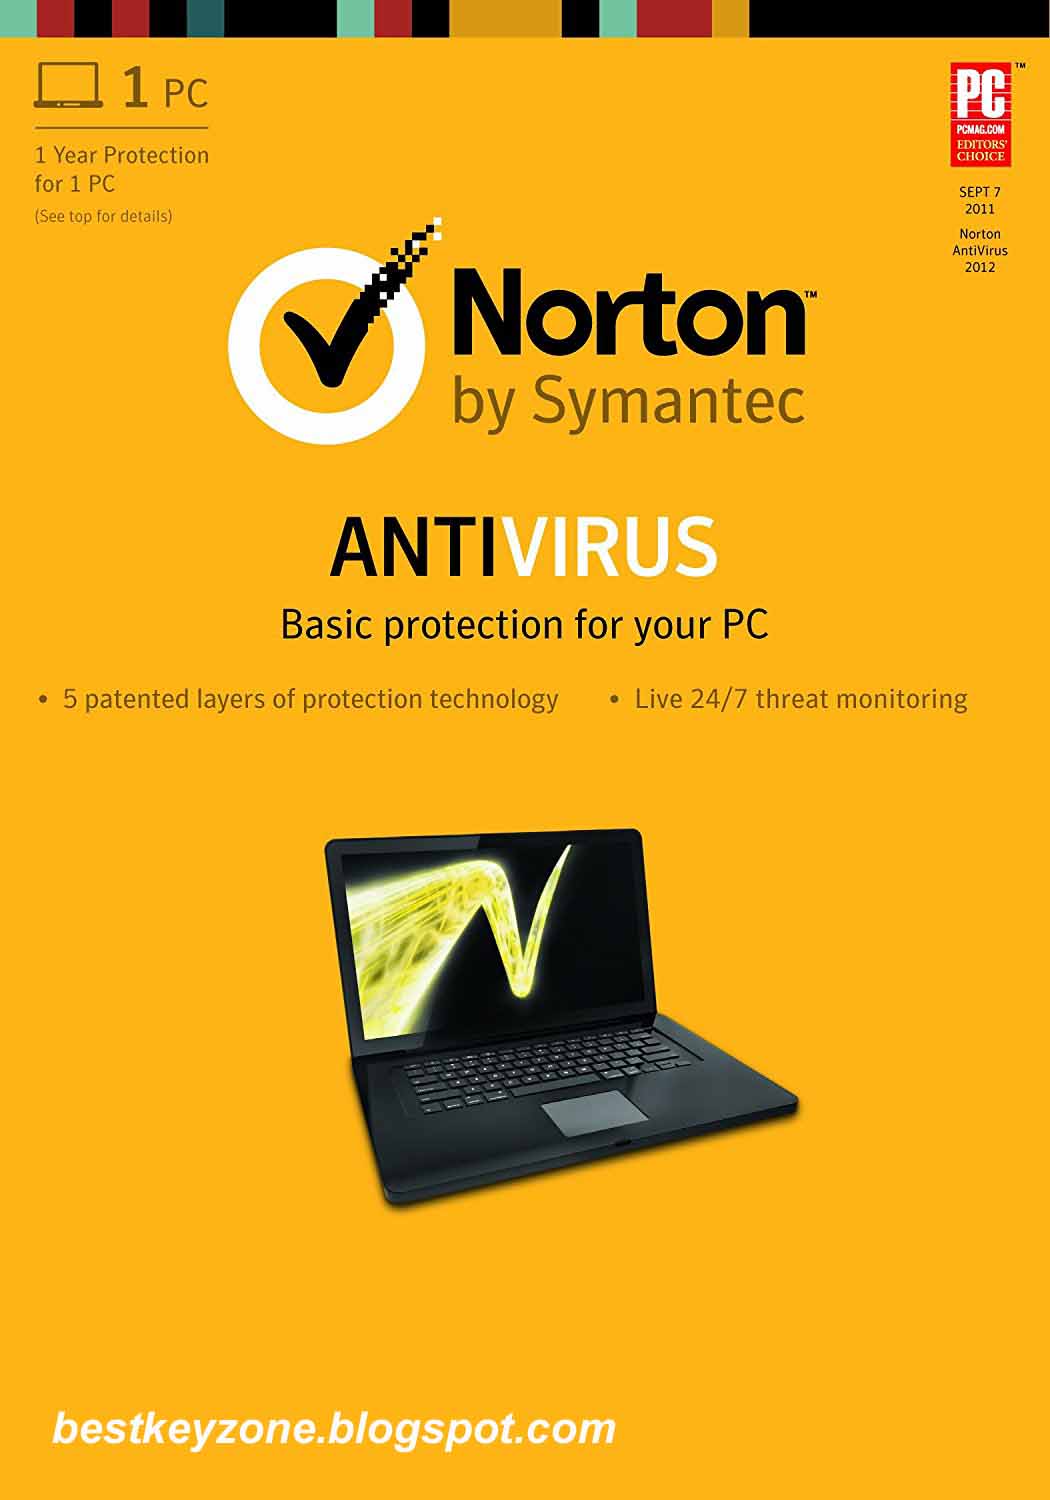 norton-antivirus-offline-installer-free-download-best-key-zone